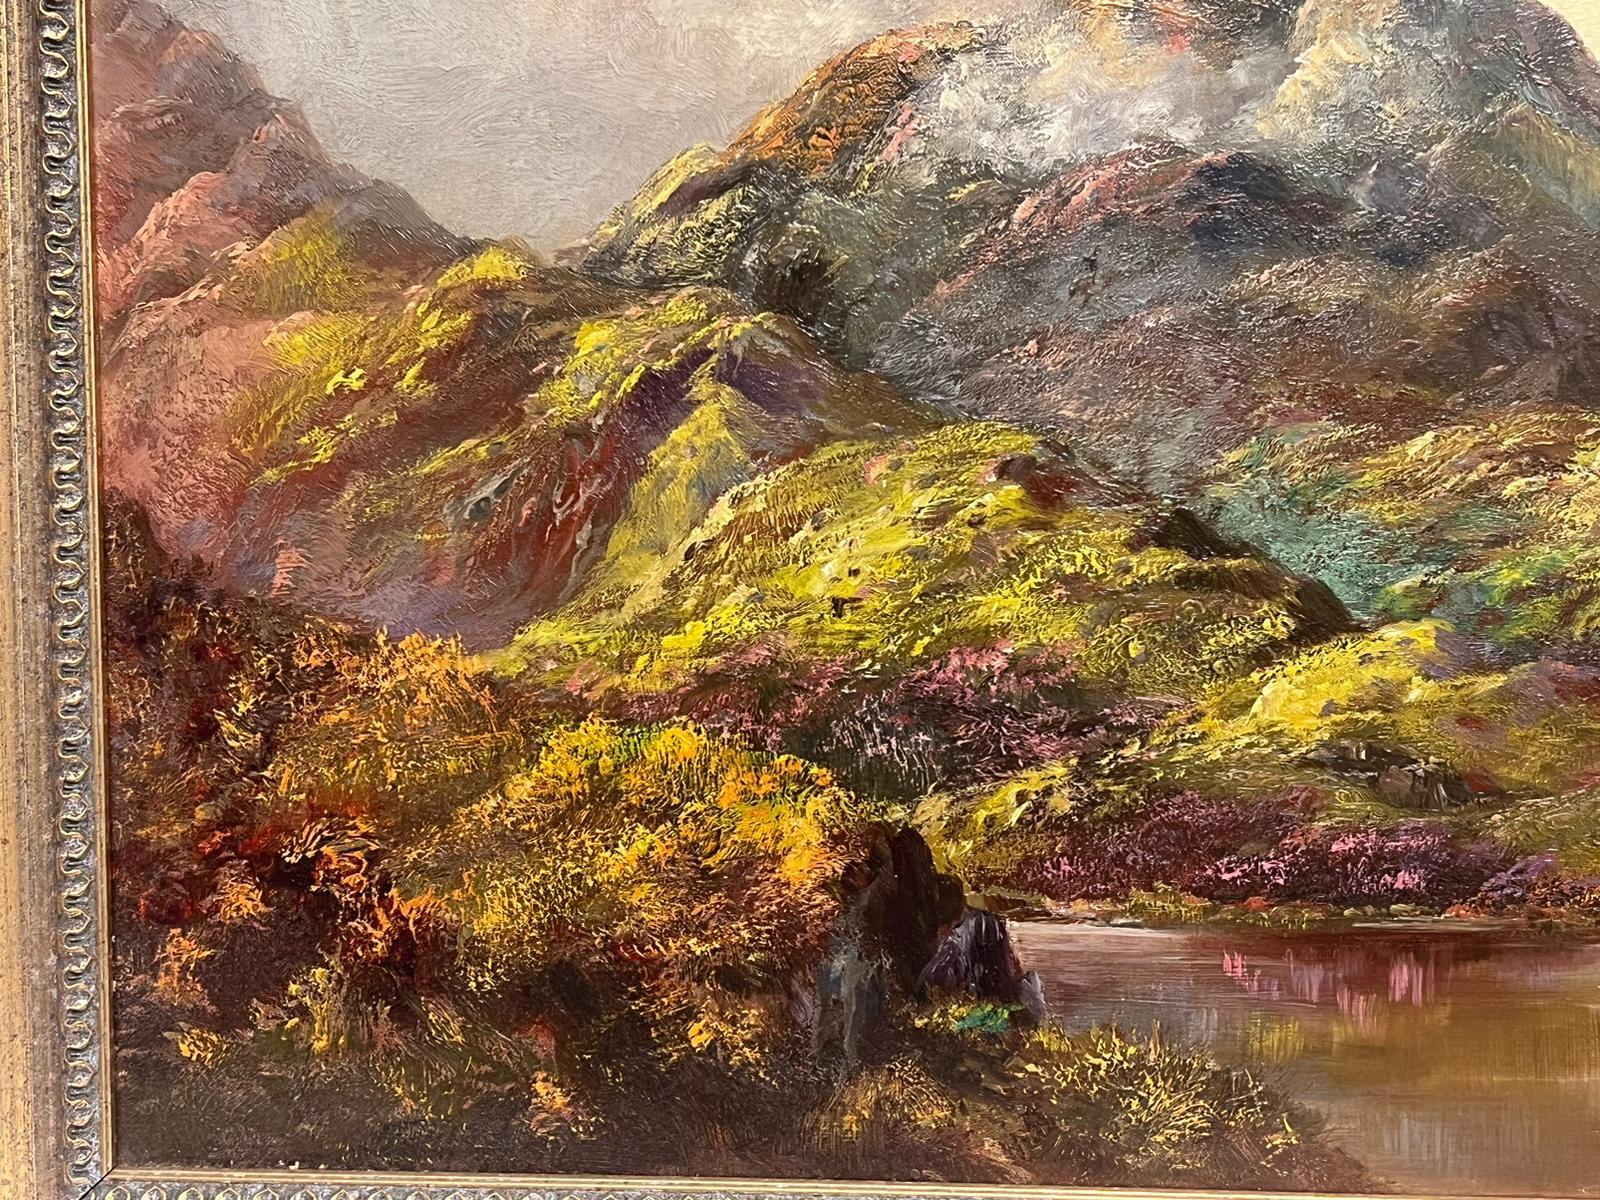 Loch Baddagyle, schottische Highlands, signiertes Ölgemälde, gelisteter britischer Künstler (Viktorianisch), Painting, von Prudence Turner